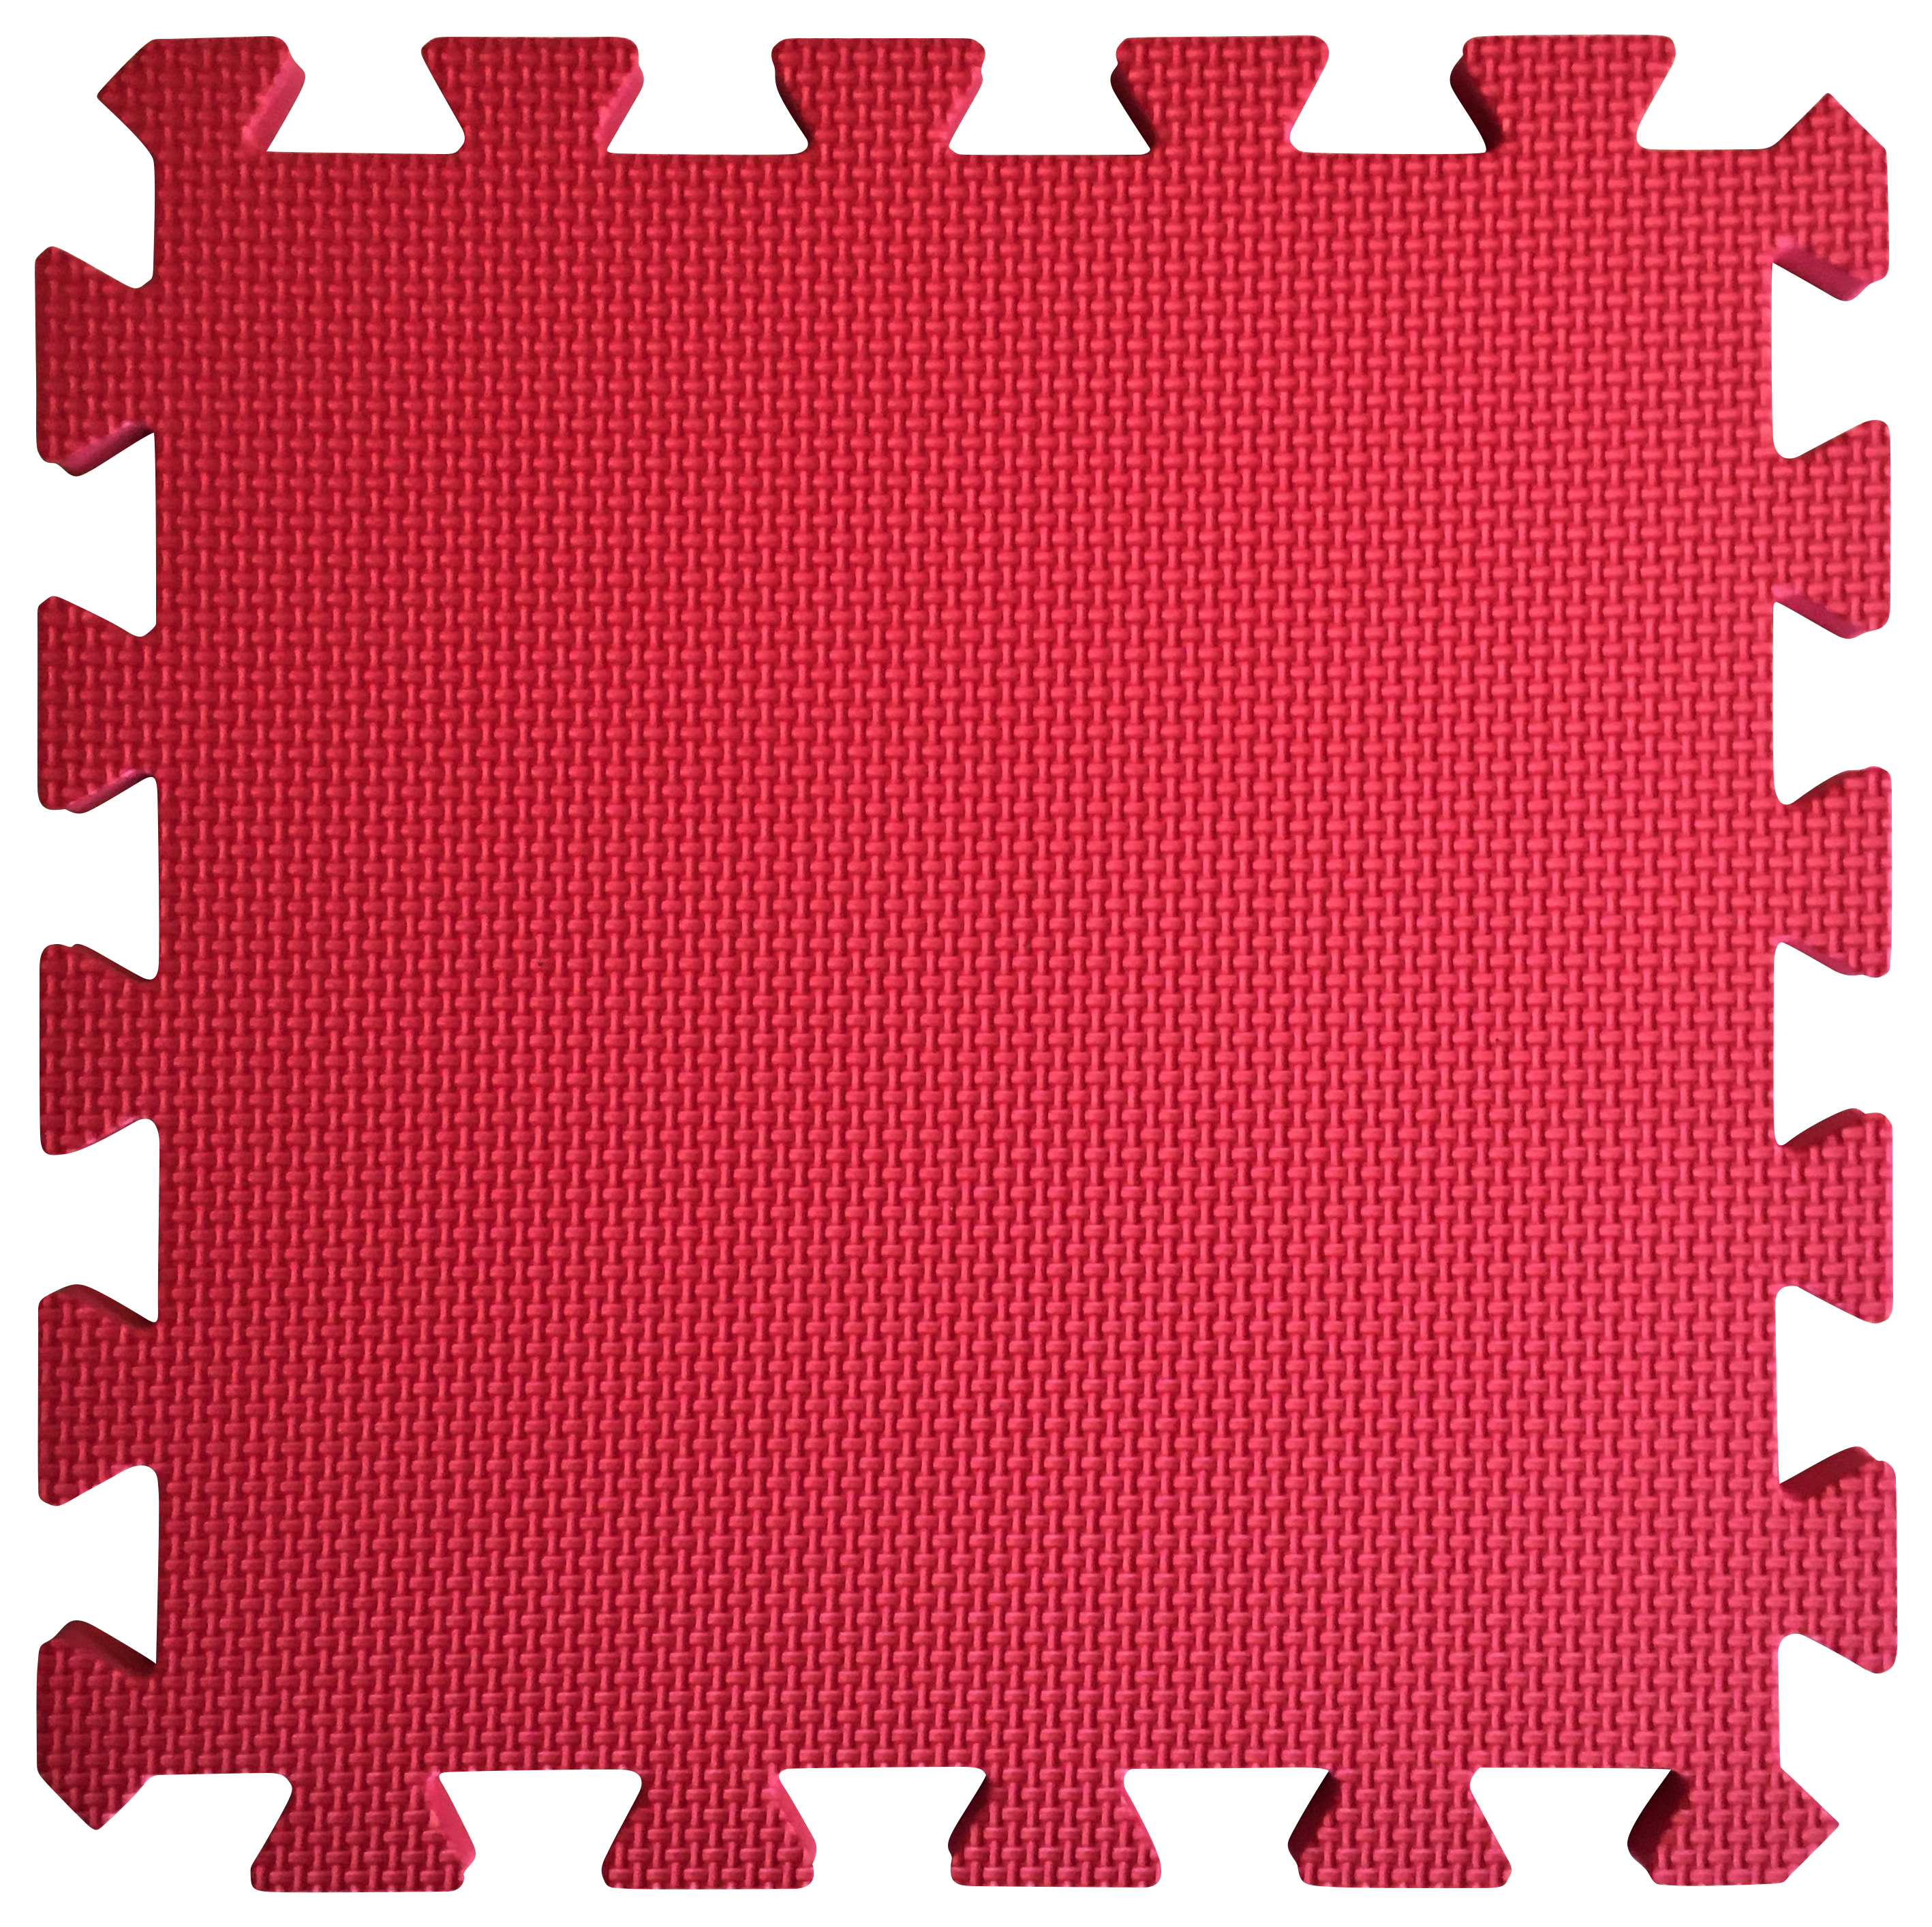 Image of Warm Floor Red Interlocking Floor Tiles for Garden Buildings - 6 x 7ft